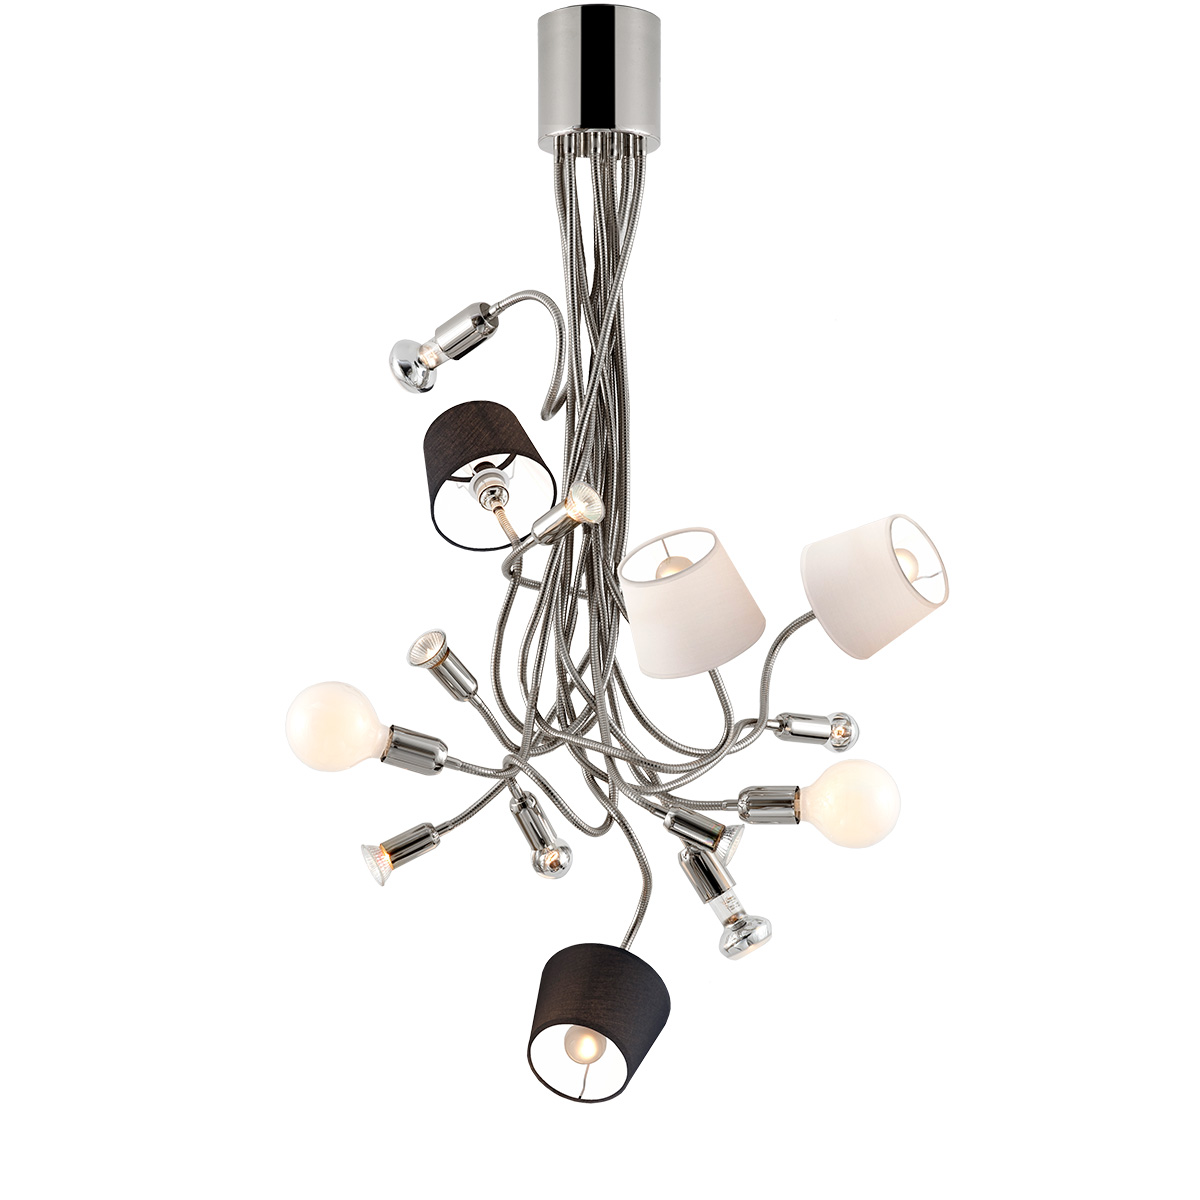 Φωτιστικό 14φωτο με καπέλα FLEX 14-bulb chandelier with shades